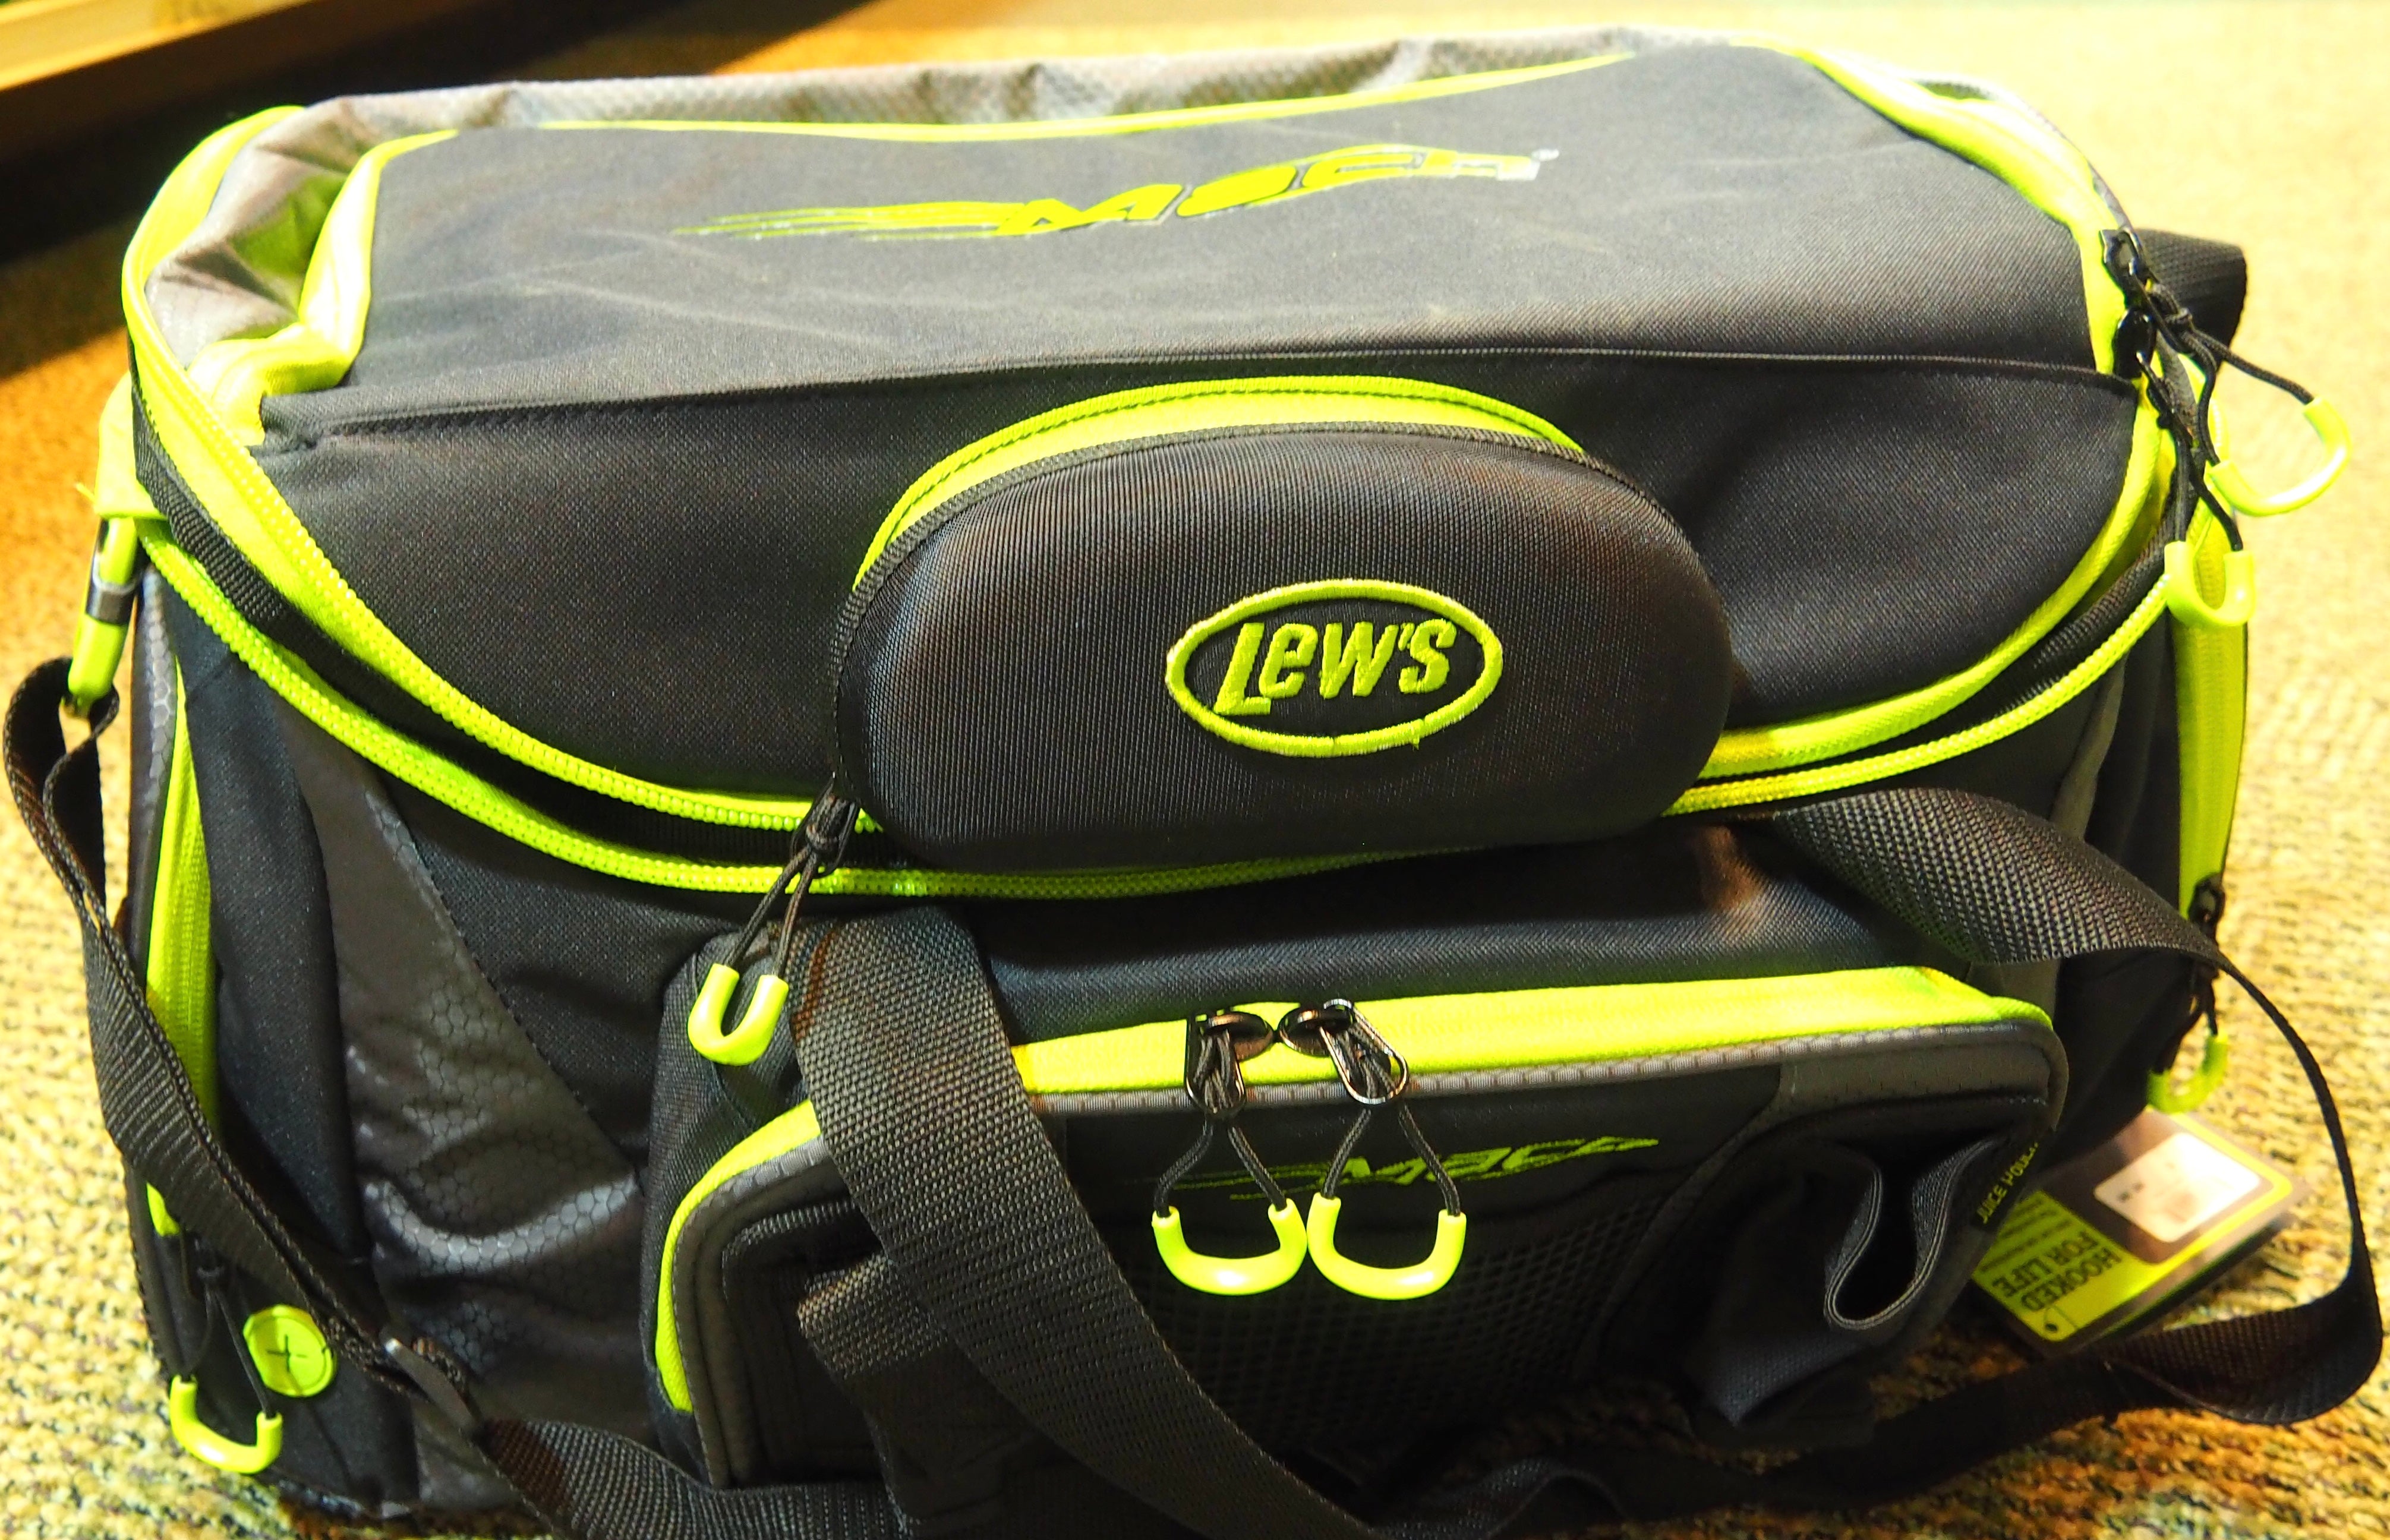 Lew's Mach Tackle Bag